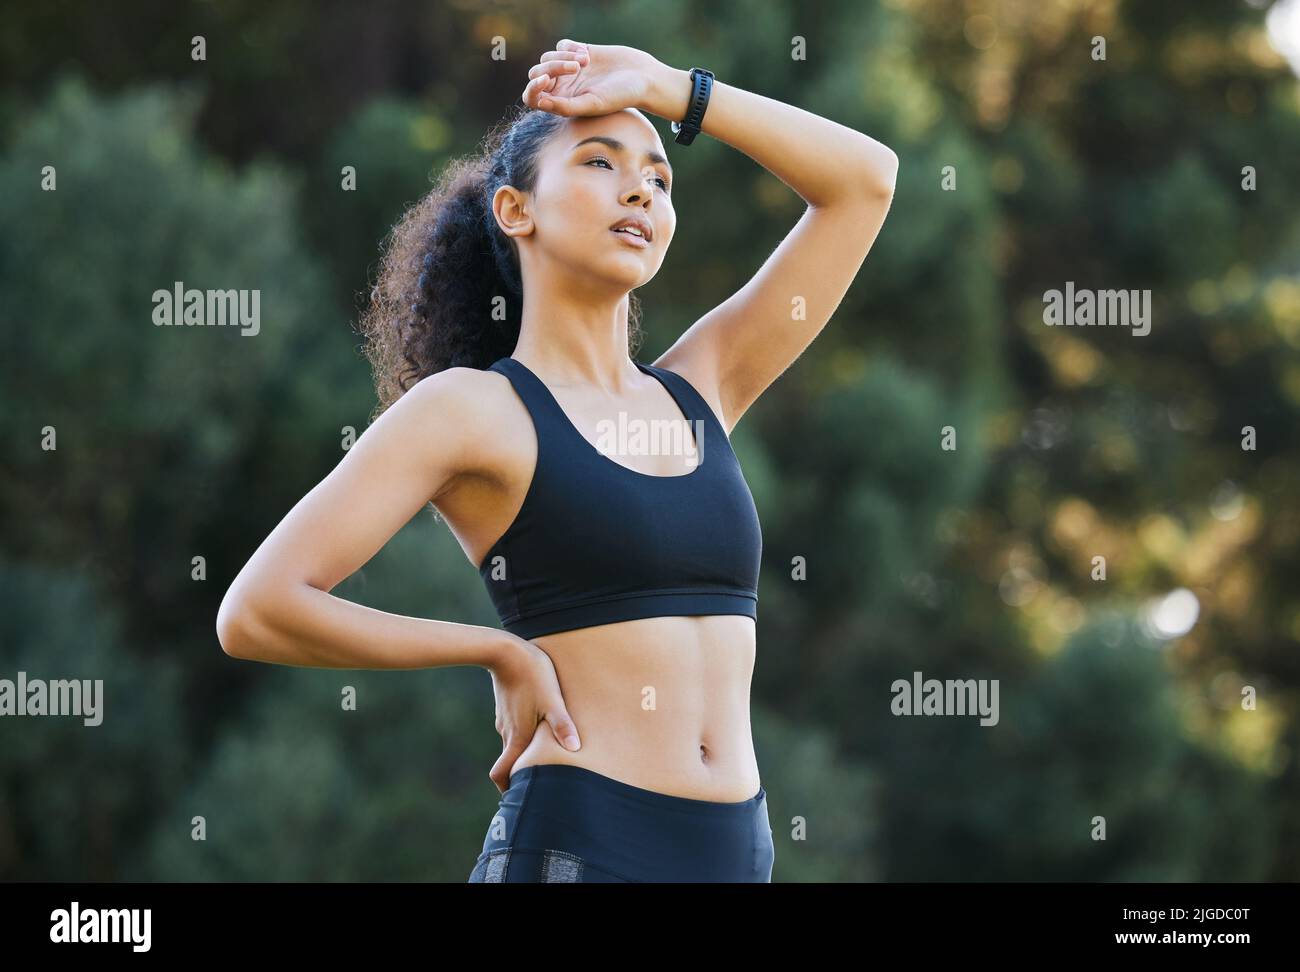 Puh, das war intensiv. Eine sportliche junge Frau atmet beim Training im Freien auf. Stockfoto